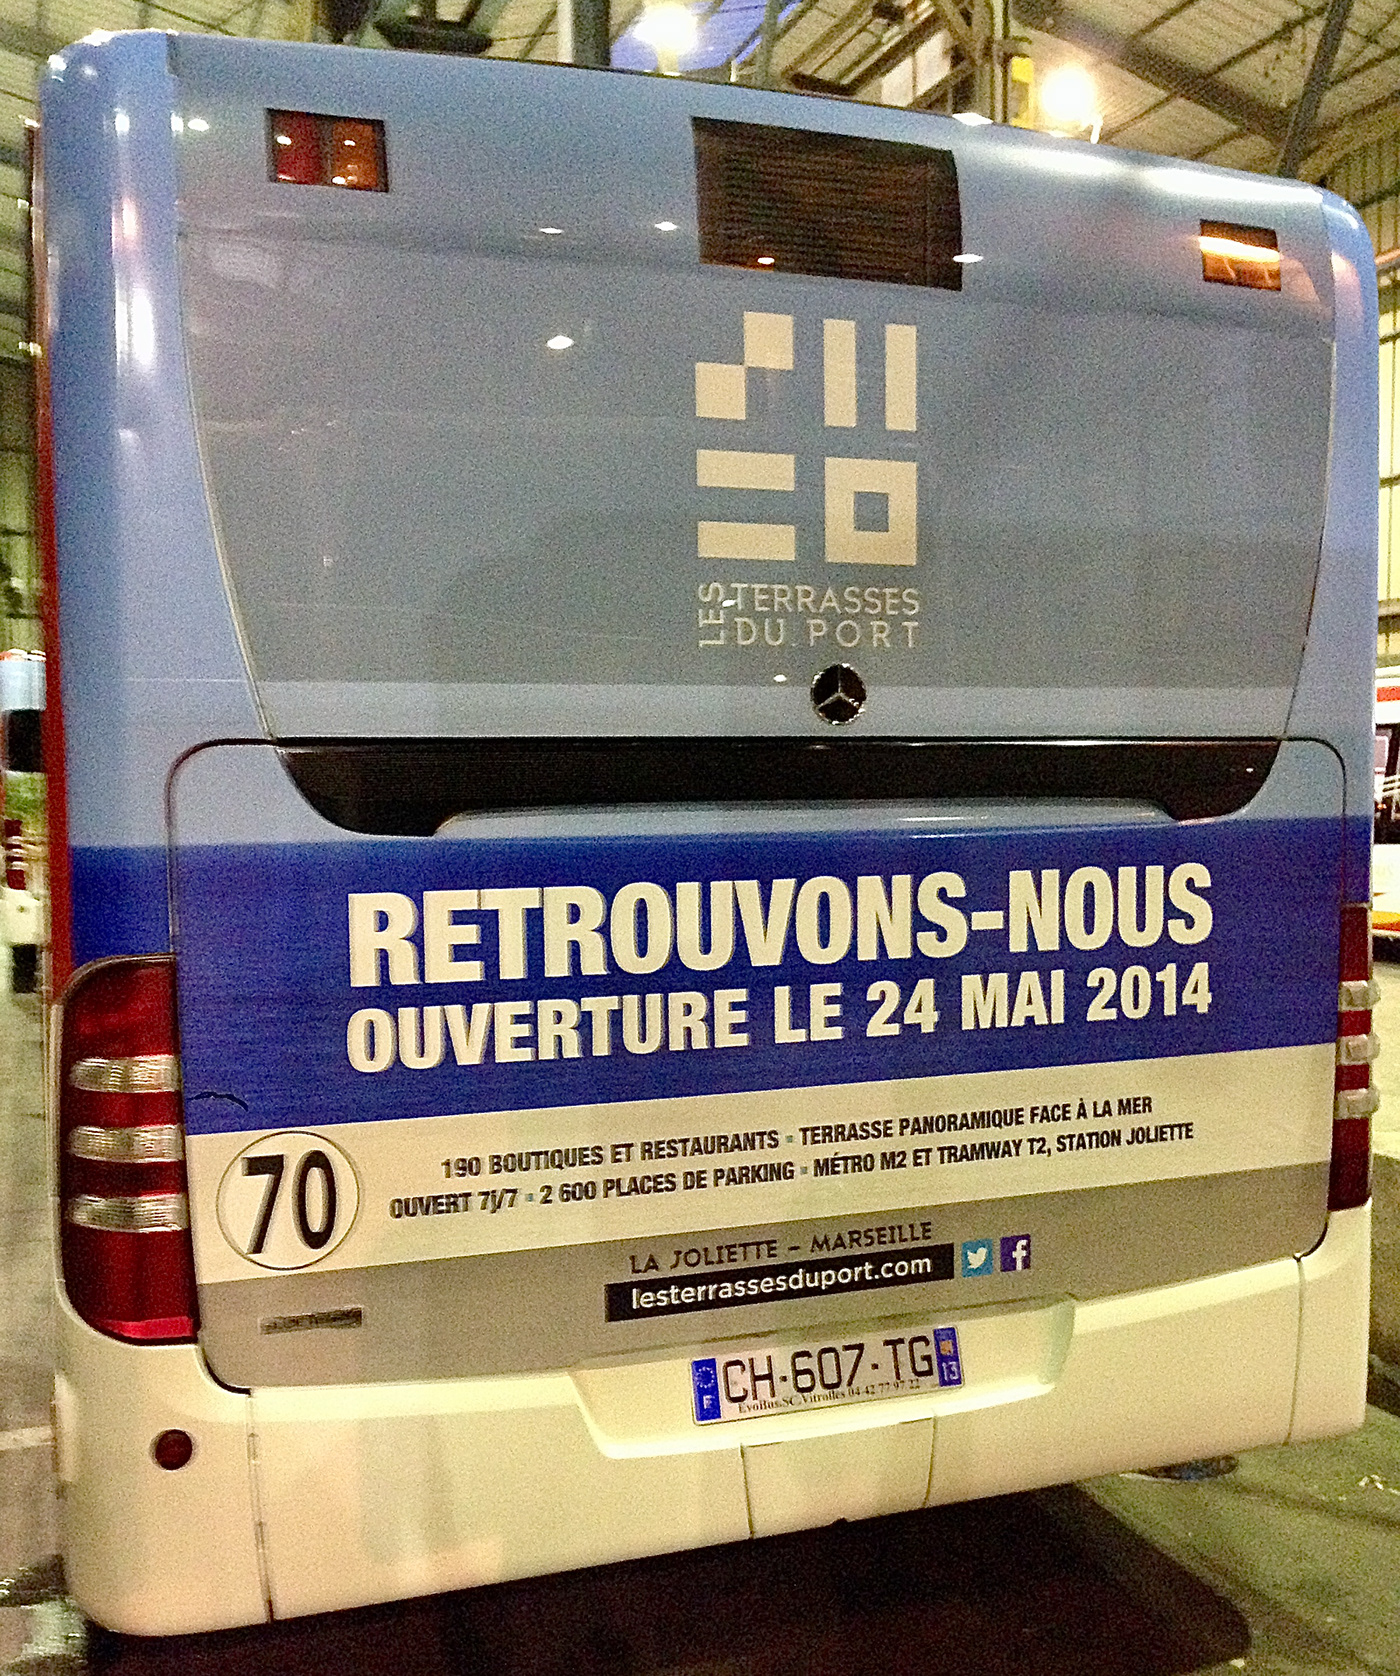 Adhesivage affichage pelliculage evenementiel Paris marseille nîmes perpignan montpellier Aix en Provence bus